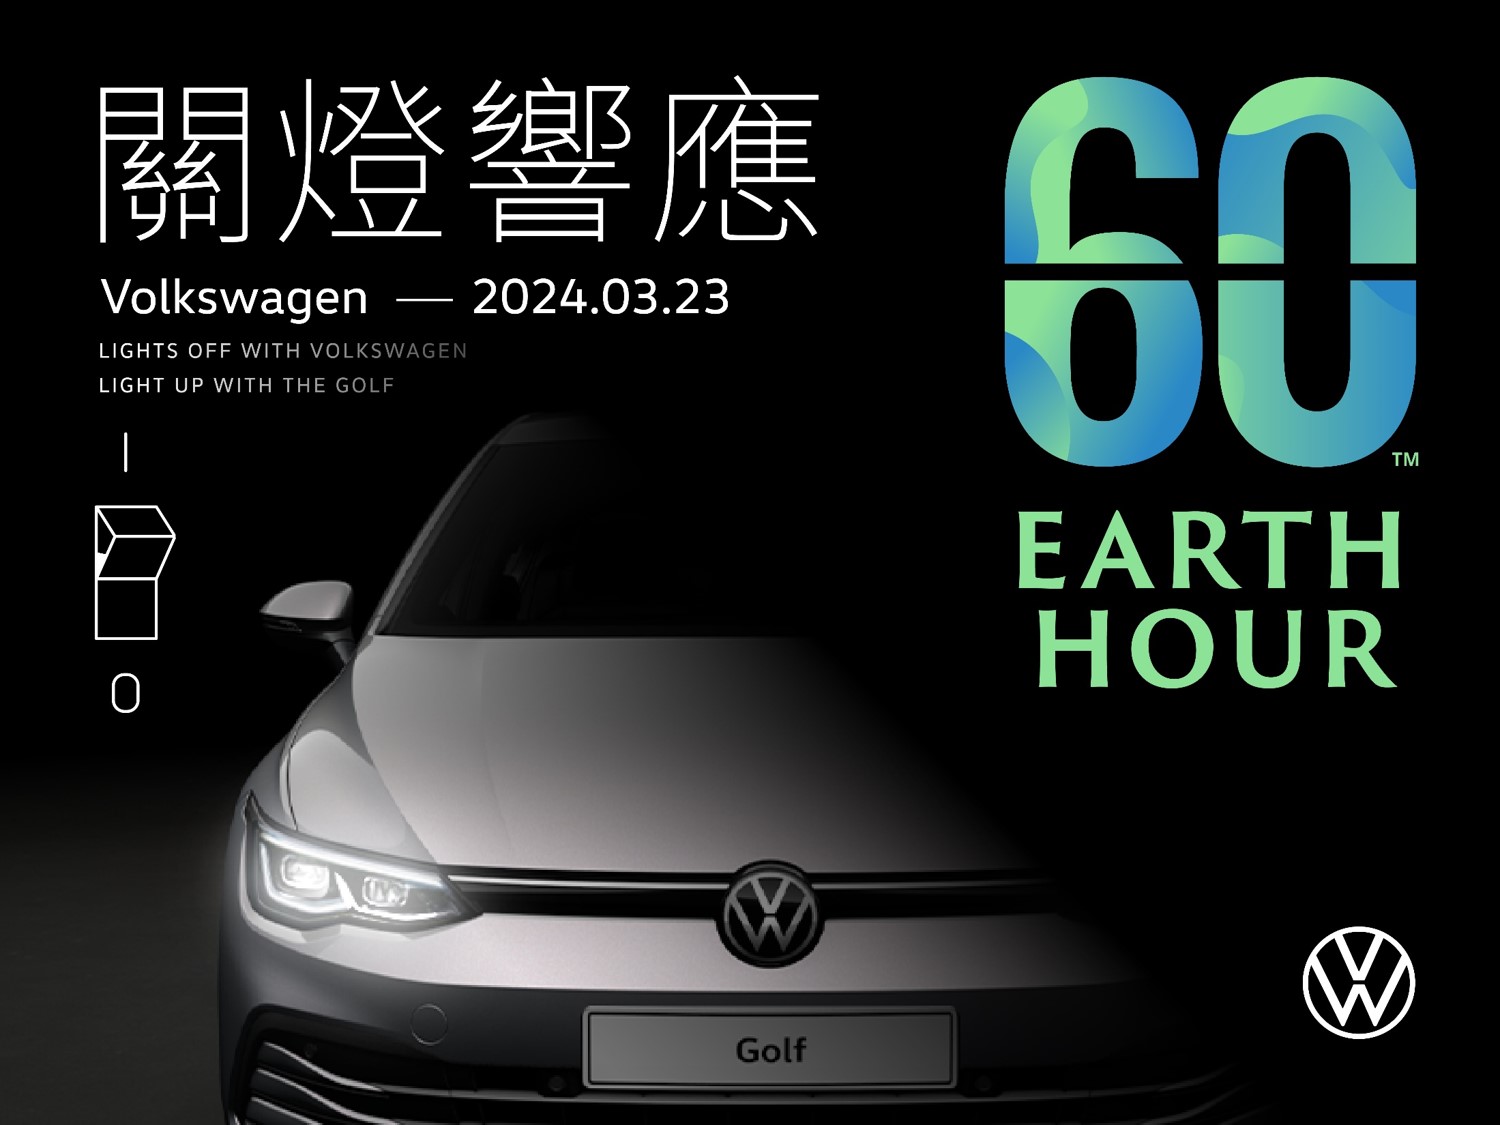 台灣福斯汽車全台26間展示中心響應「Earth Hour 關燈一小時」與The Golf一同守護地球 邁向永續減碳環保未來